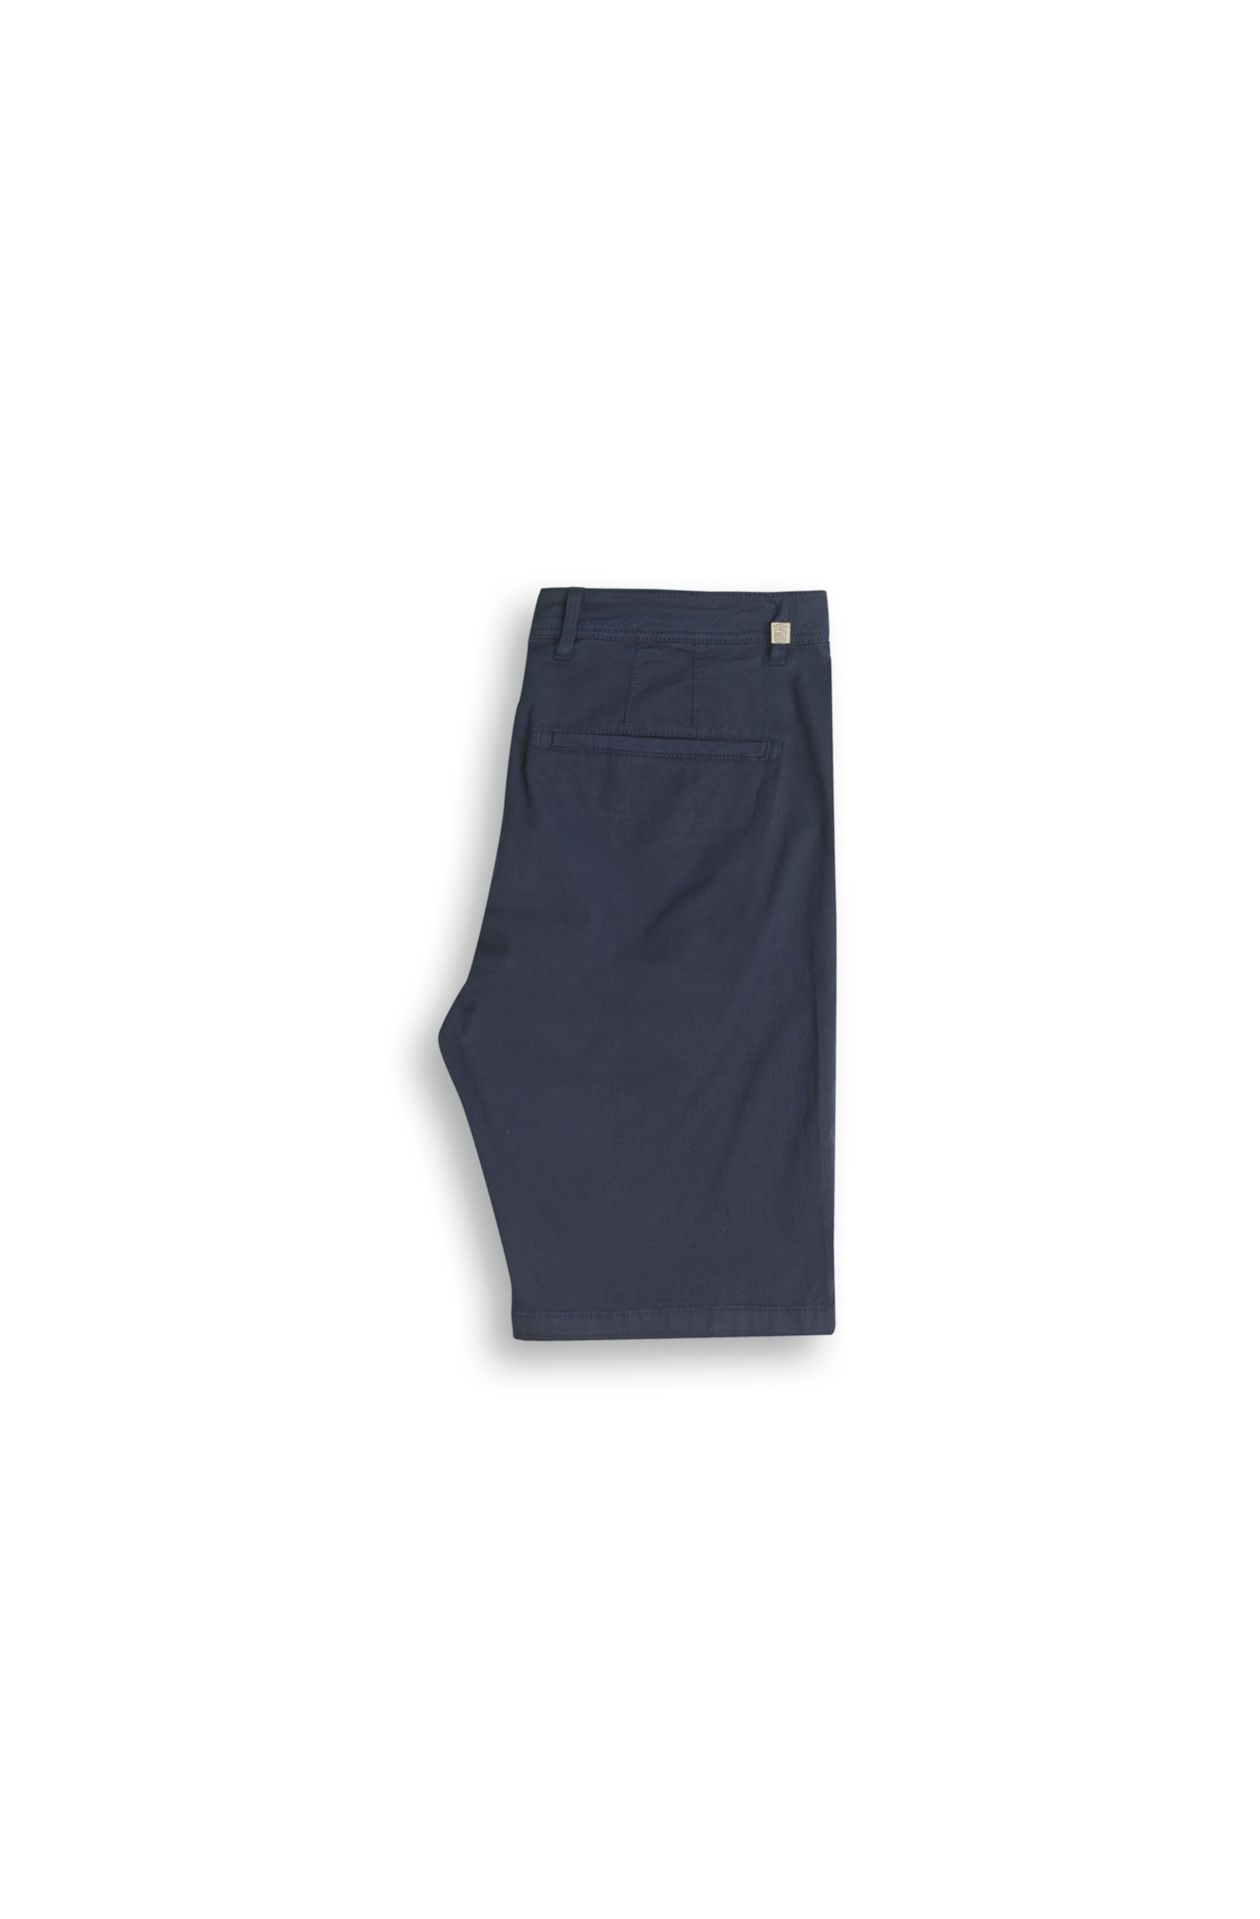 Bermuda-Shorts aus Stretch-Baumwolle